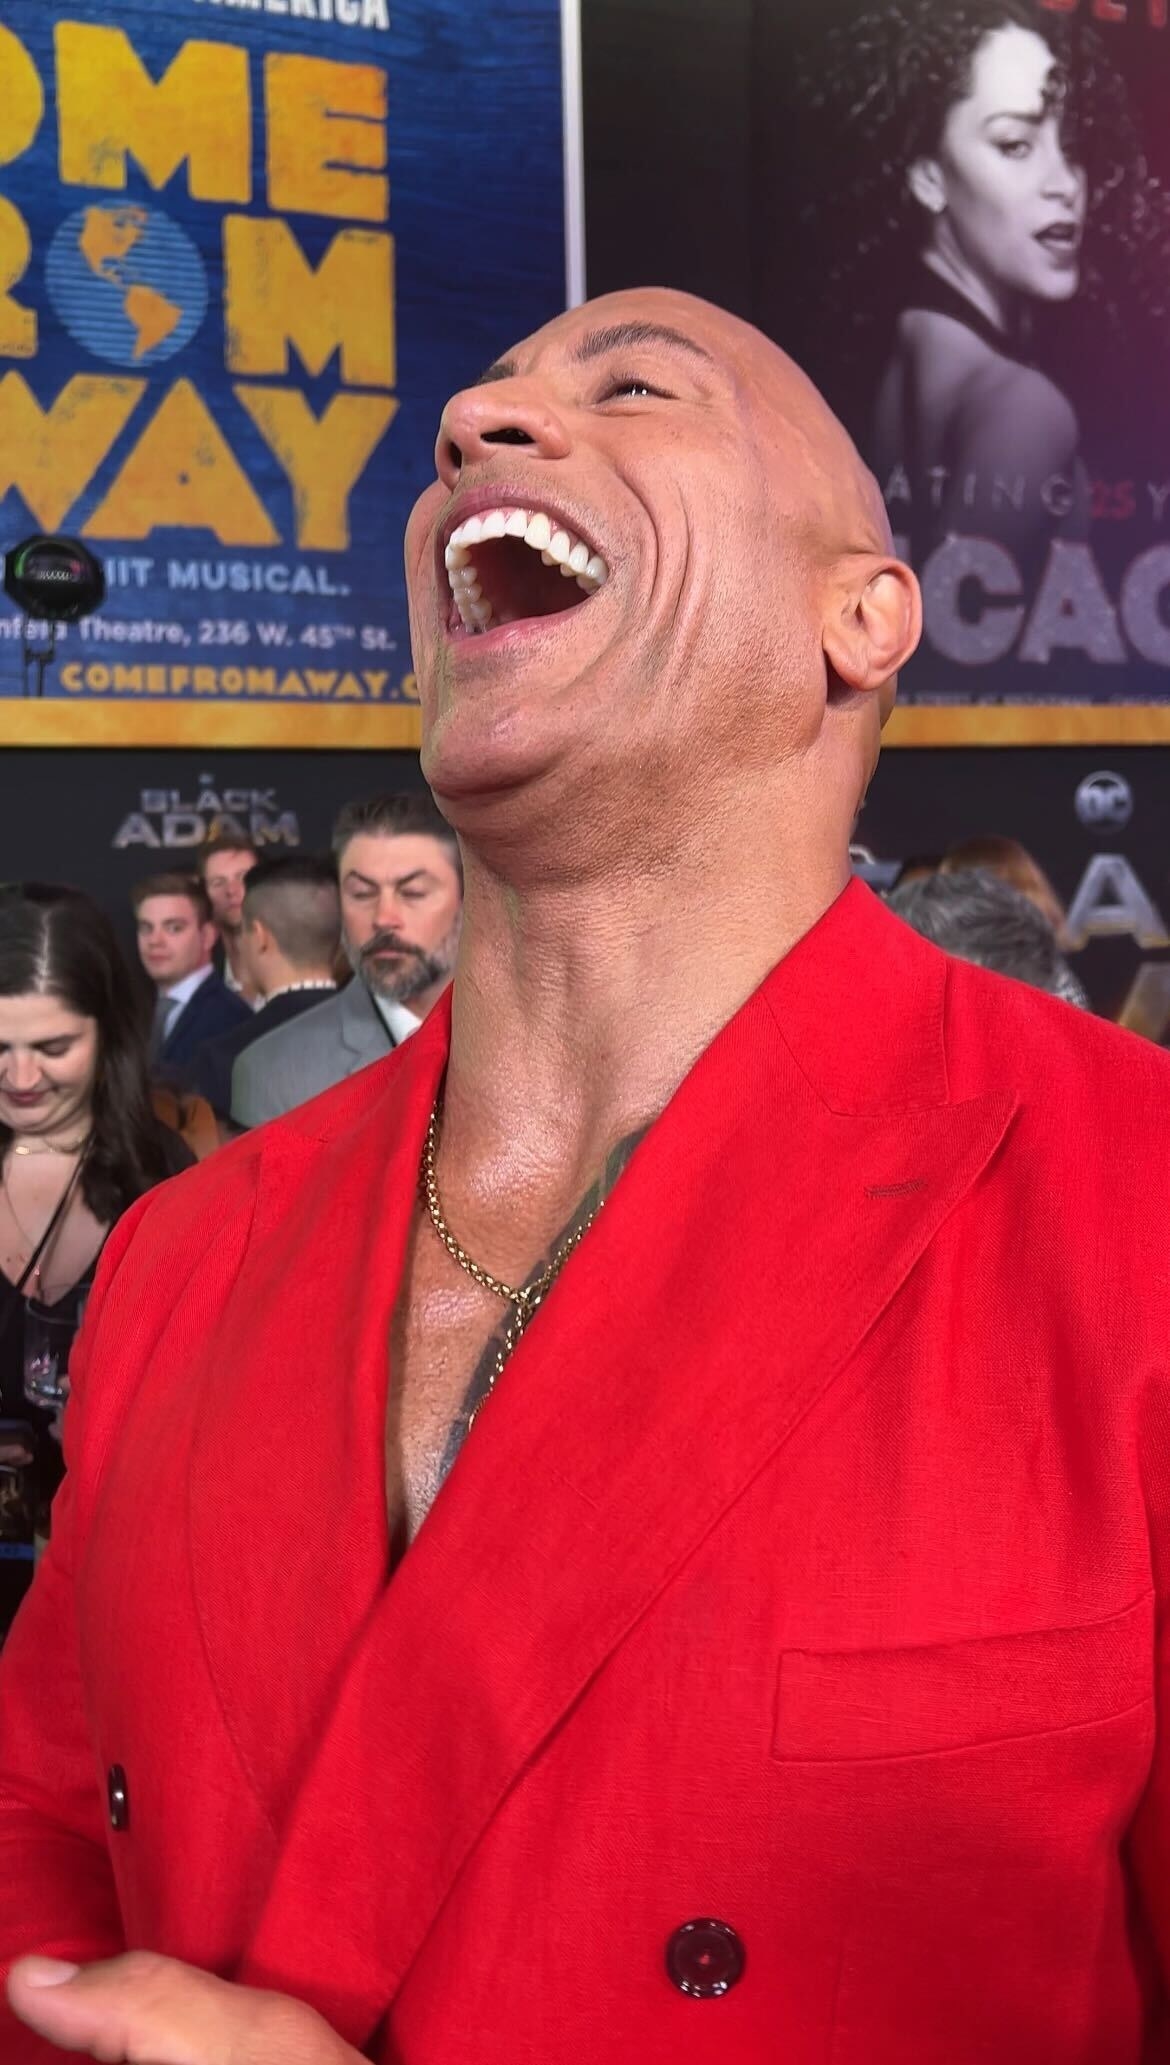 Dwayne laughing